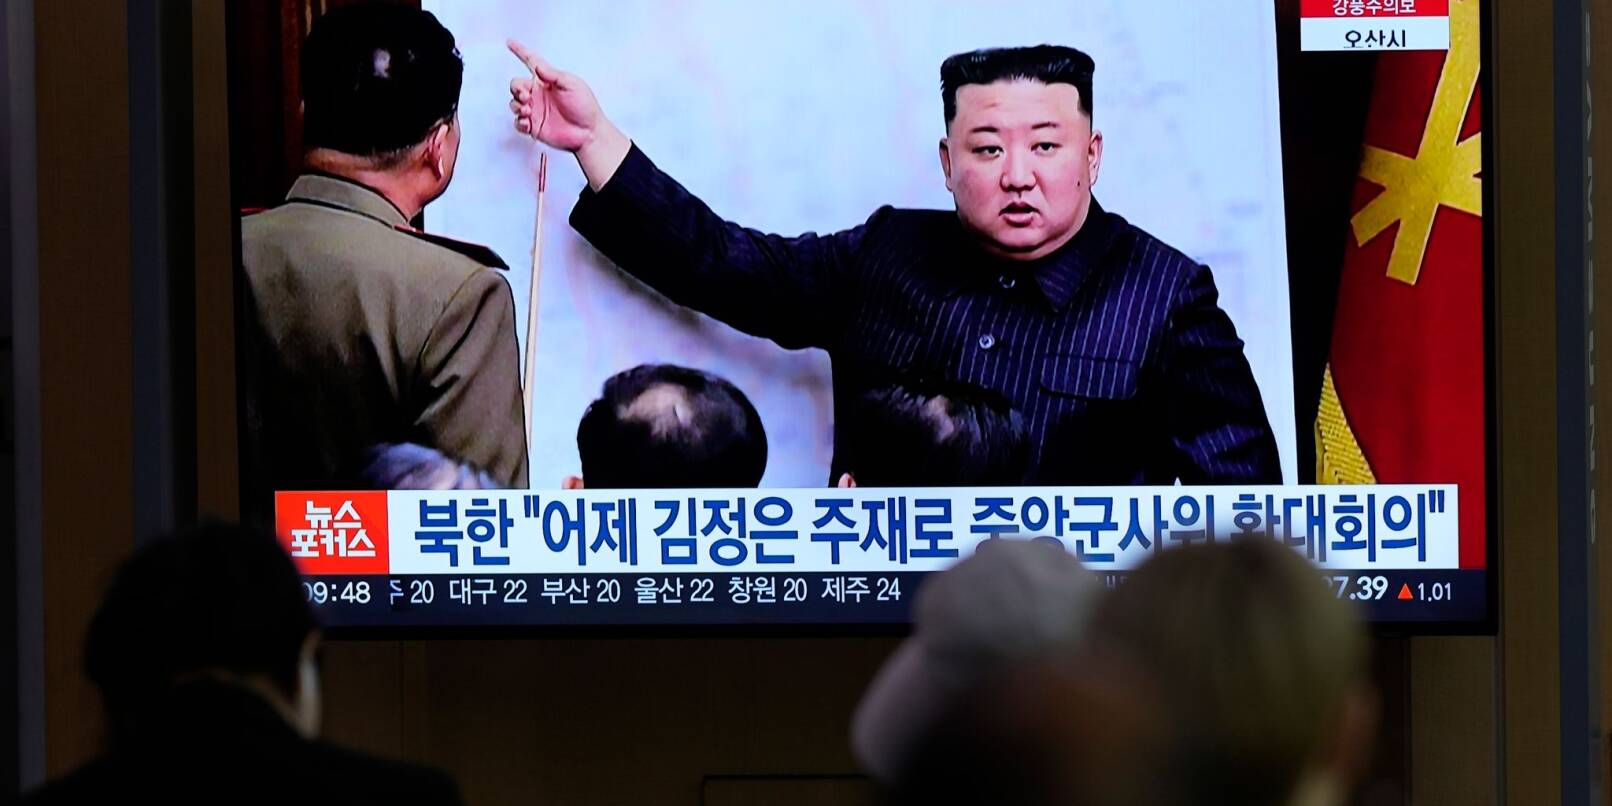 Ein Fernsehbildschirm im Bahnhof von Seoul zeigt den nordkoreanischen Führers Kim Jong Un während einer Nachrichtensendung.